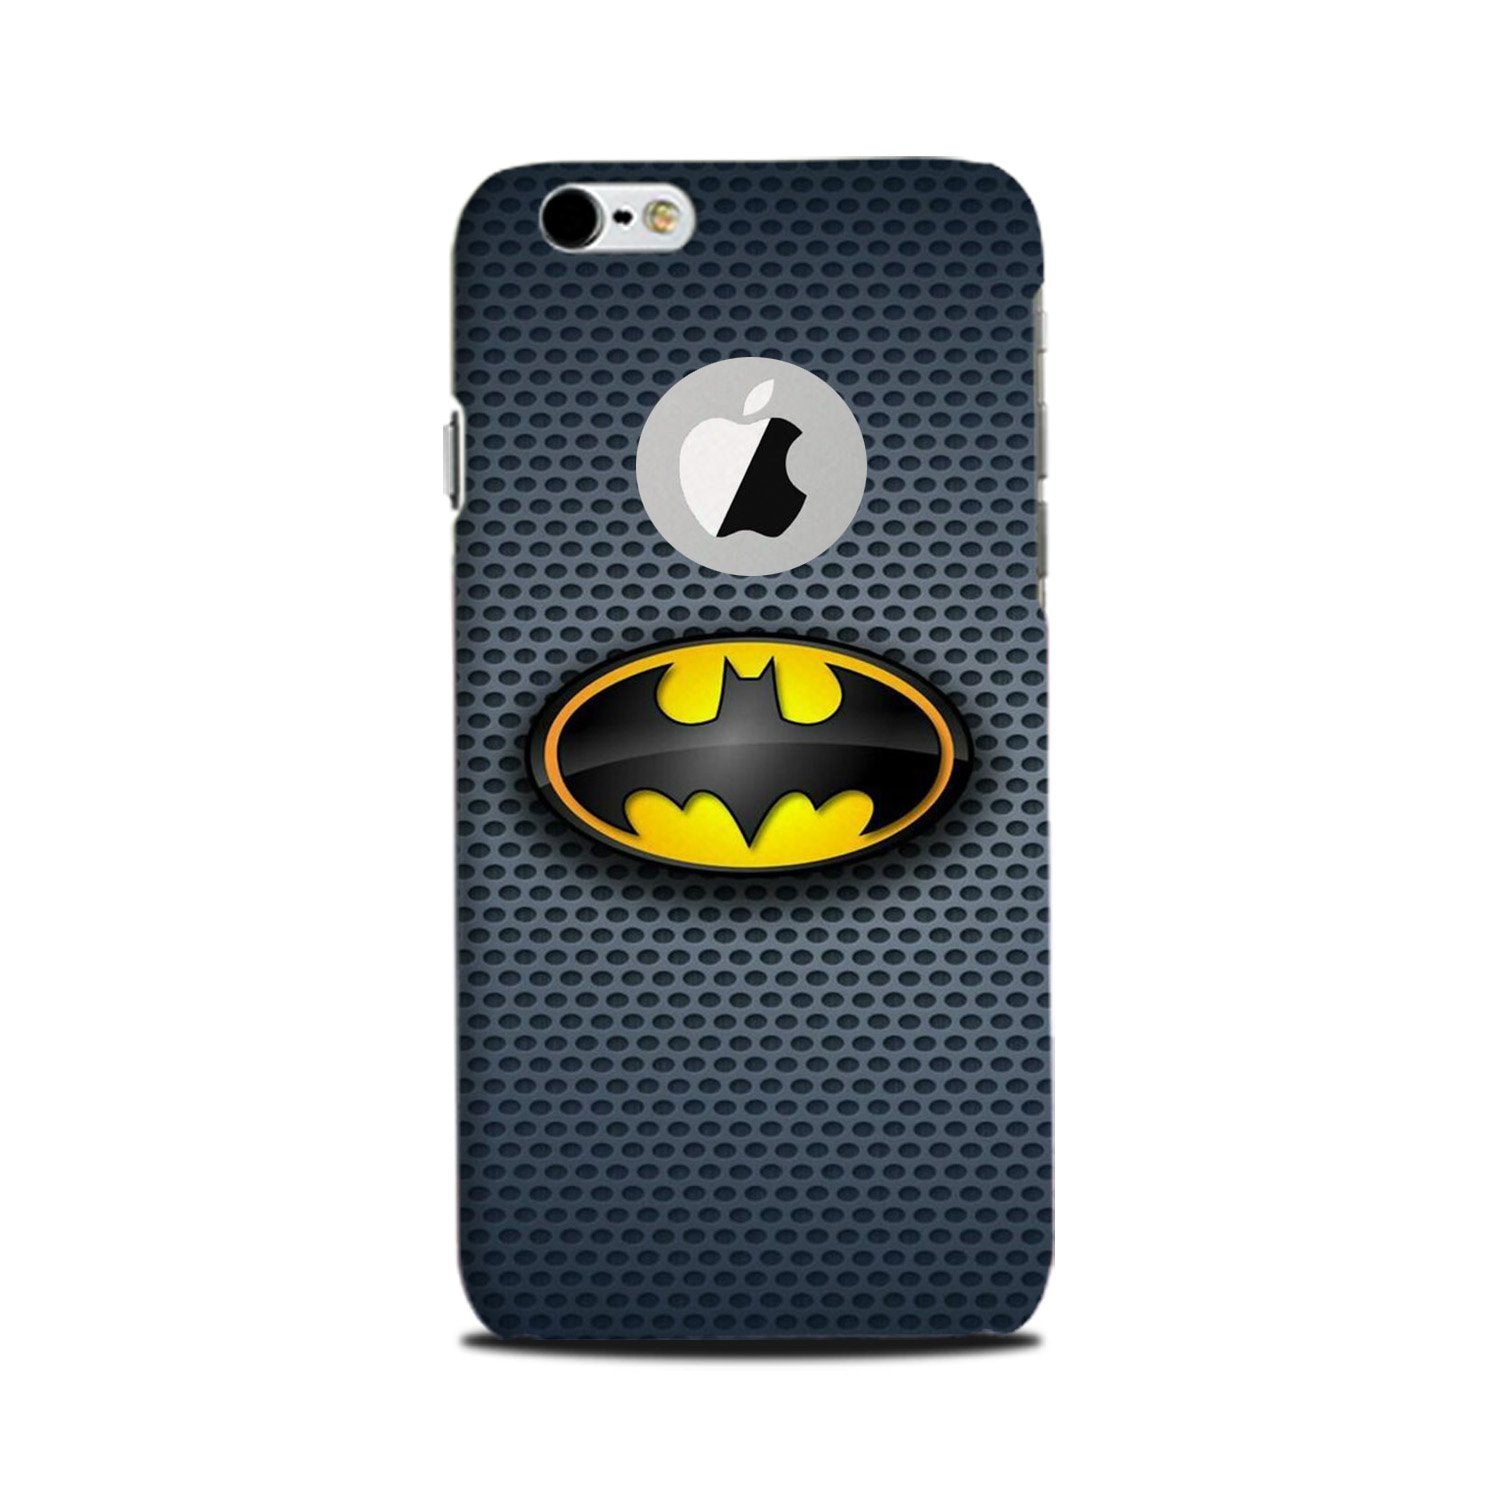 Batman Case for iPhone 6 Plus / 6s Plus logo cut(Design No. 244)